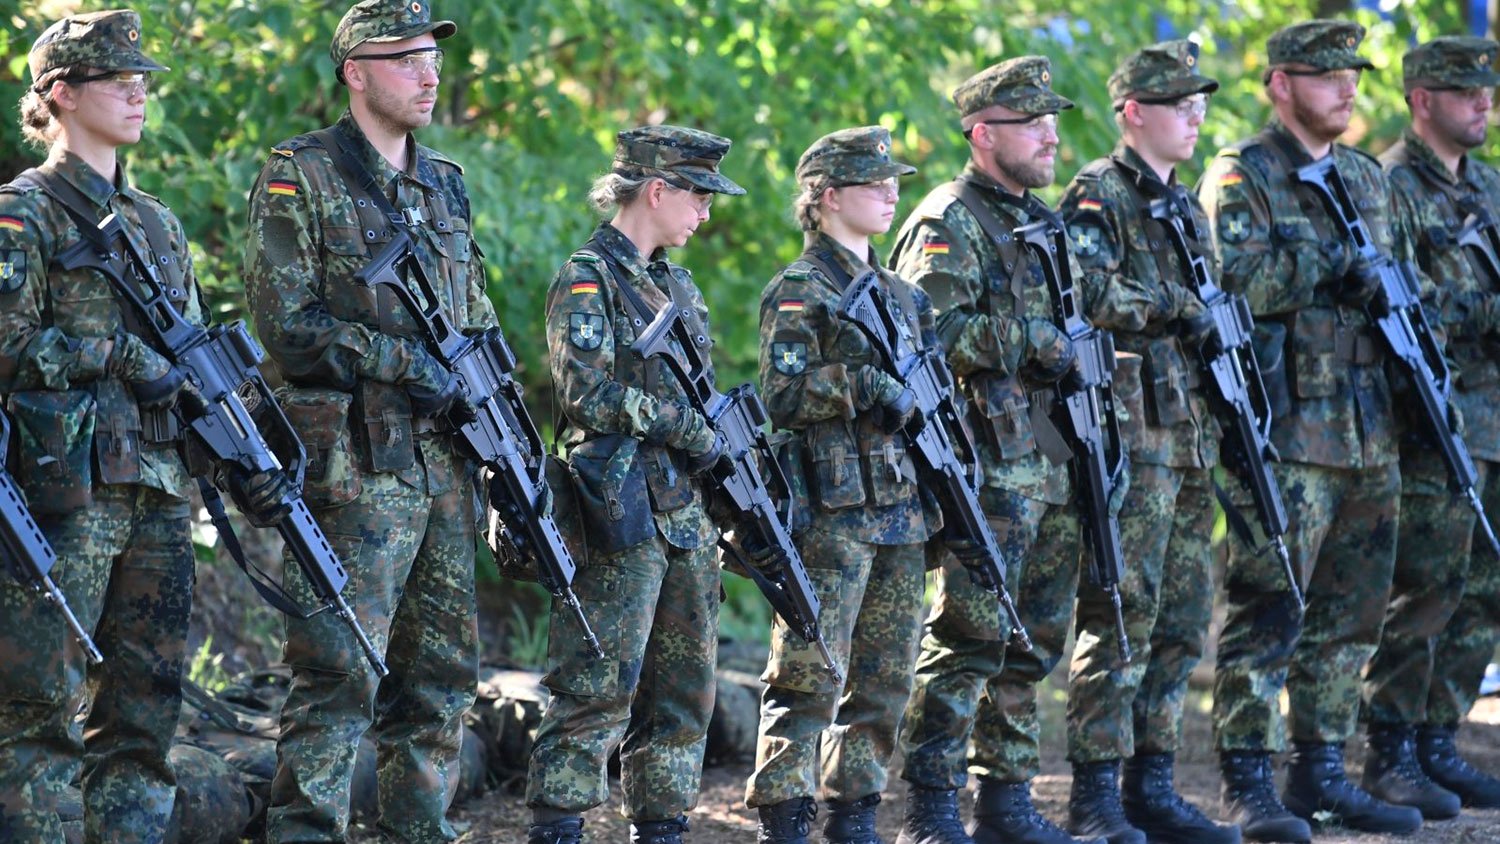 Գերմանիայում 12 հազար զինվորականներ կօգնեն բժիշկներին COVID-19-ի դեմ պայքարում․ Spiegel